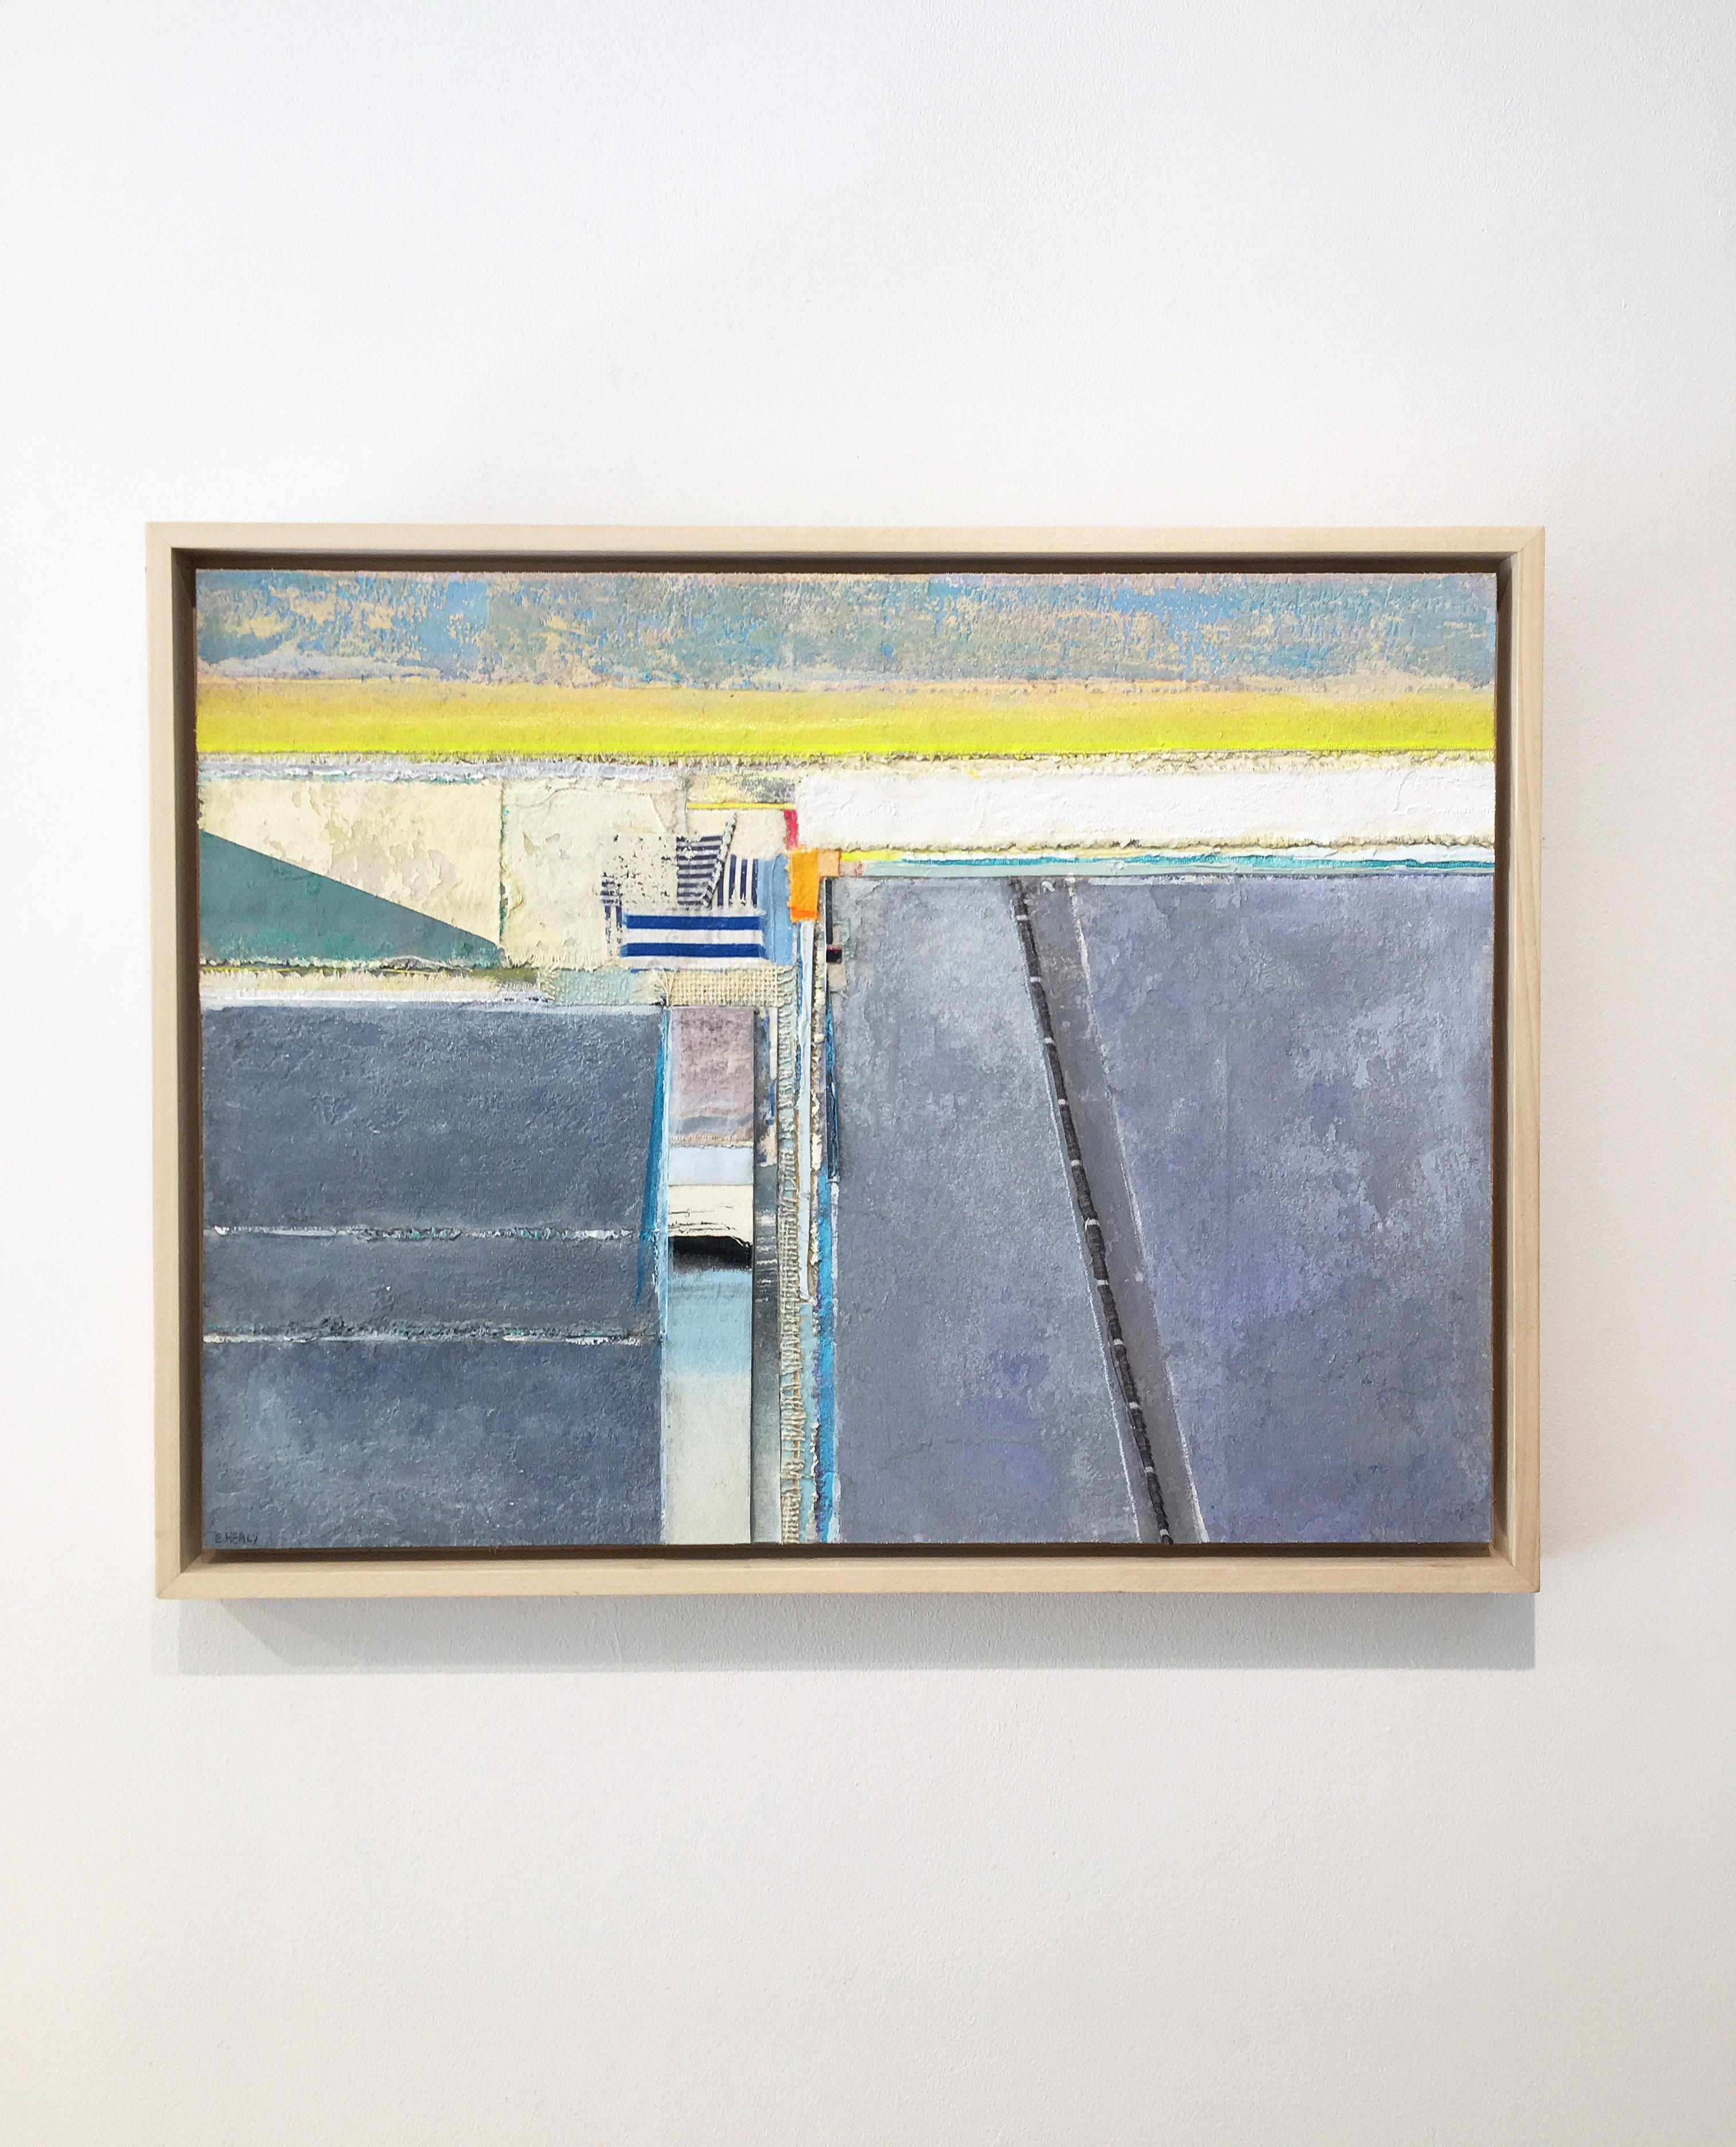 Coastal painting, Mixed media abstract, Eugene Healy, Coastal Series #20 1